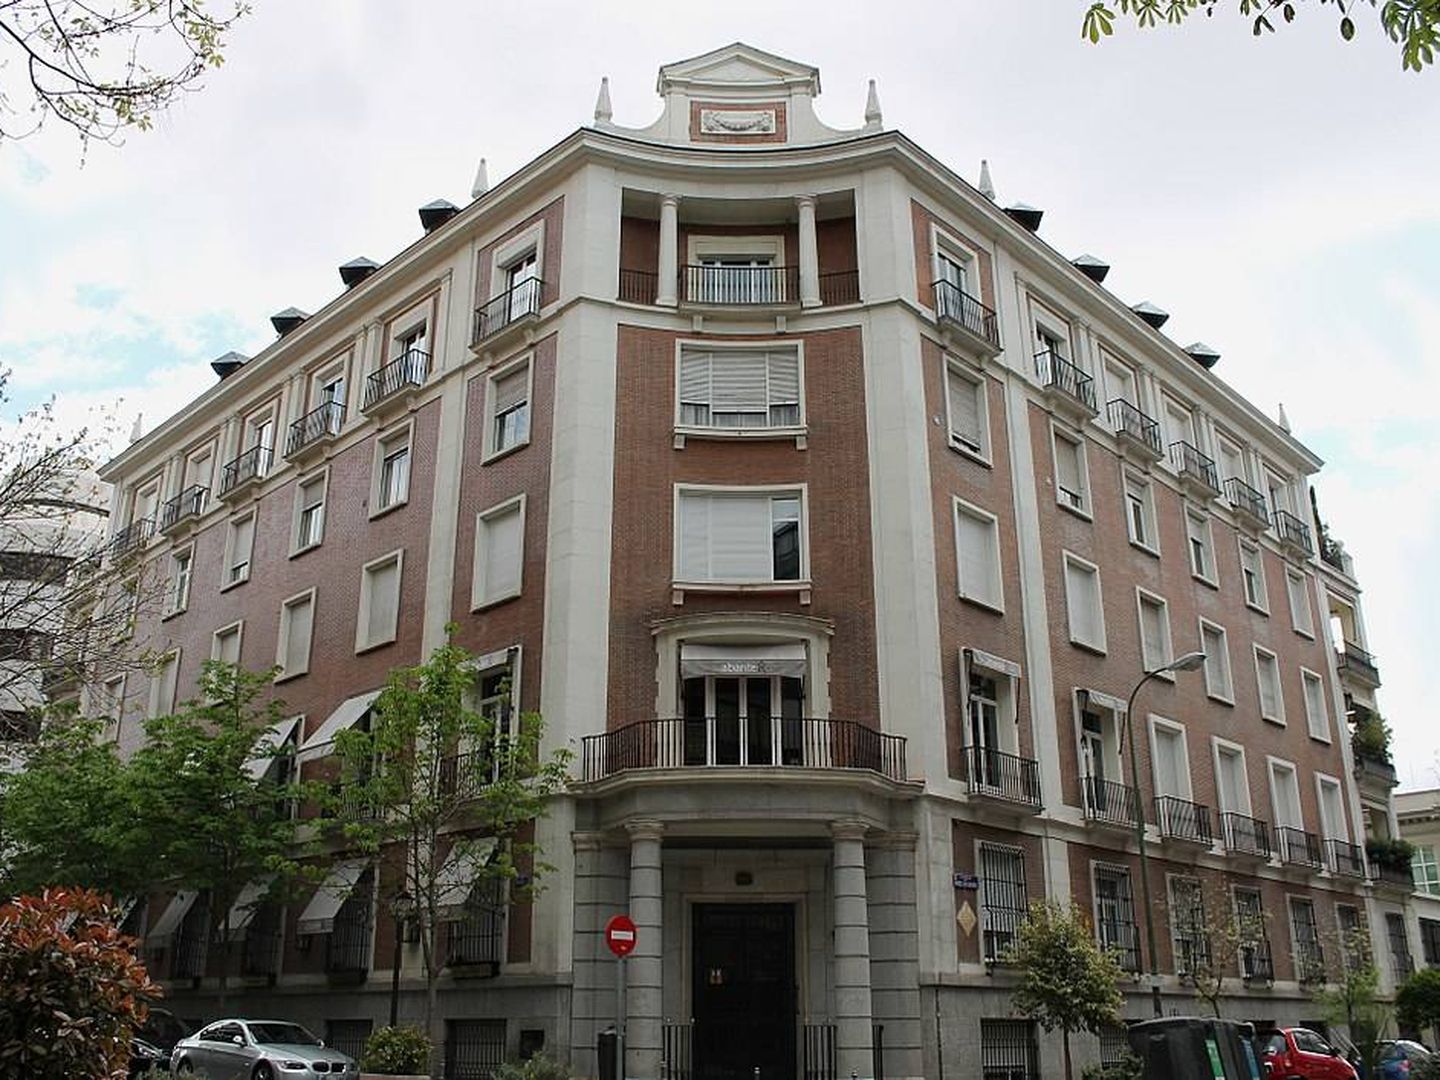 Edificio de viviendas en la calle Padilla, construido en 1945. (Wikipedia)